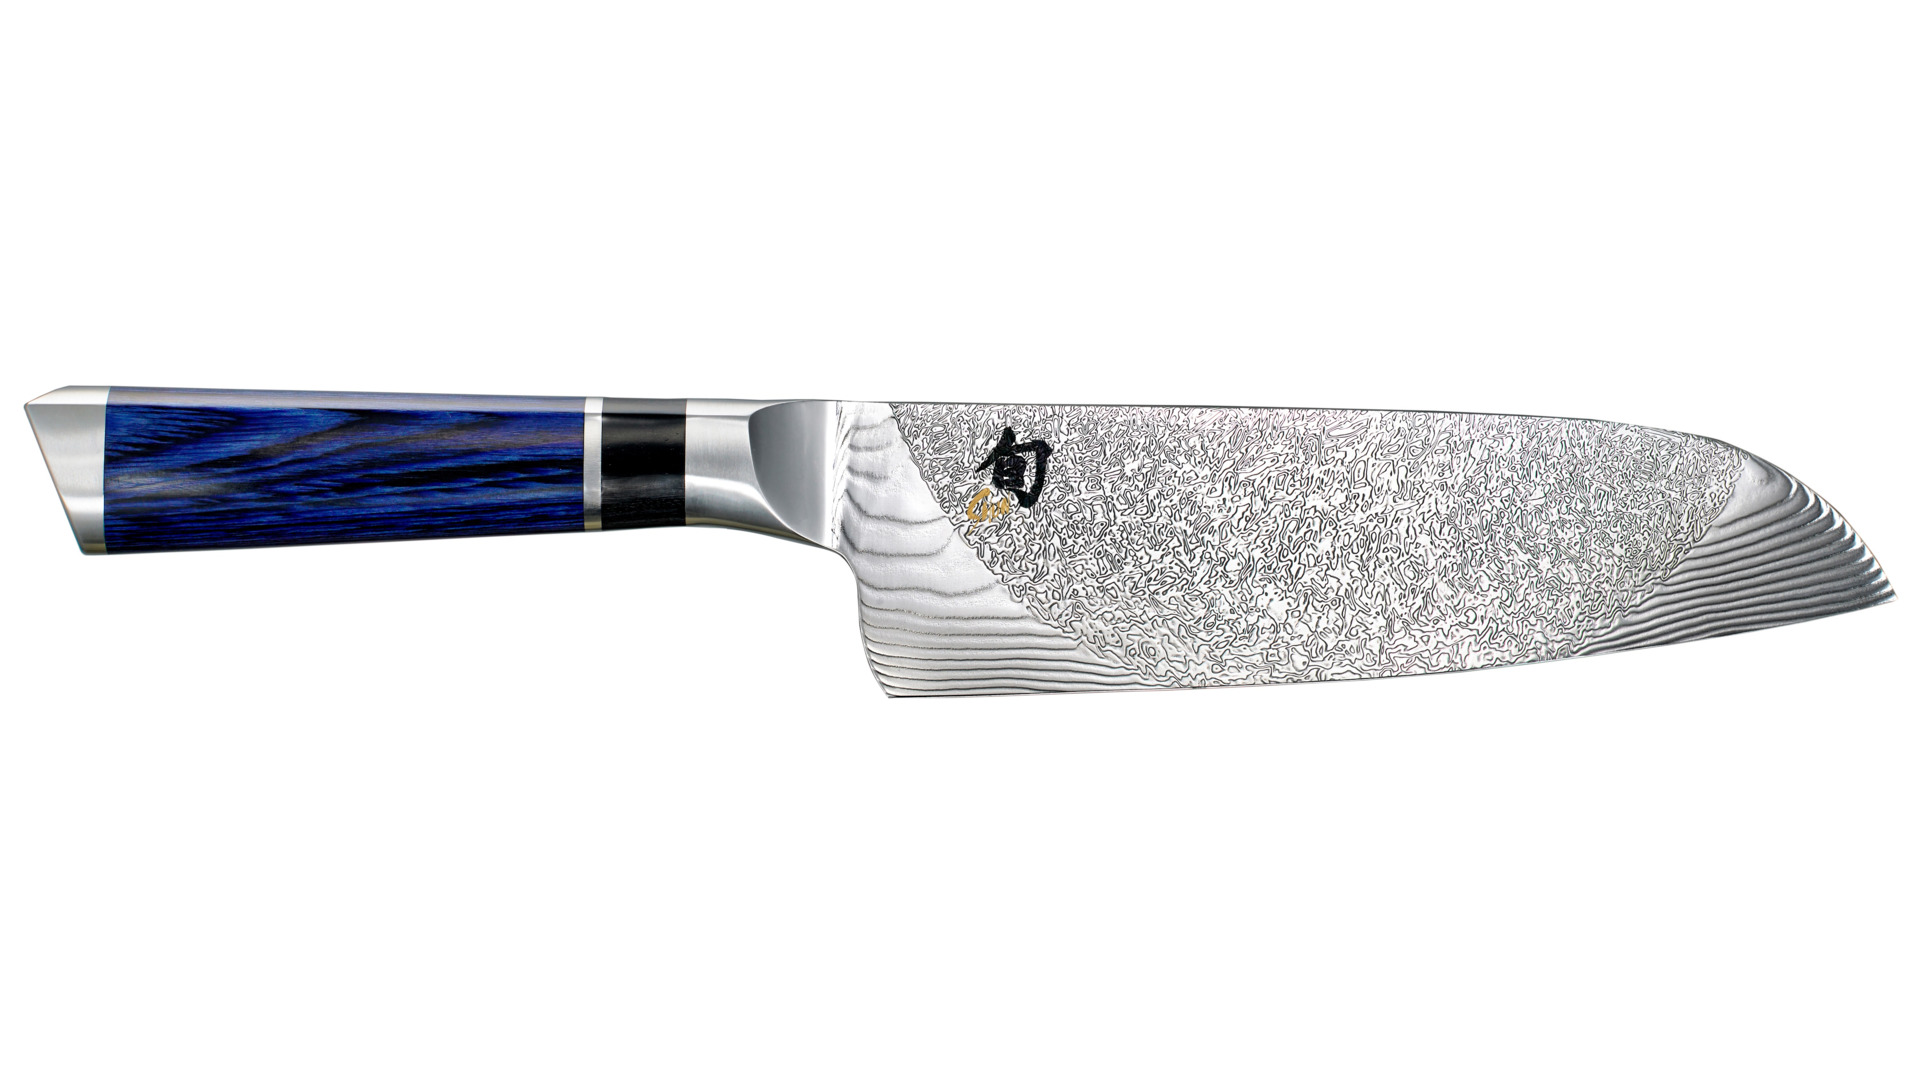 Нож поварской Сантоку KAI Шан Энгецу 18 см, дамасская сталь, 71 слой, лимитированный выпуск